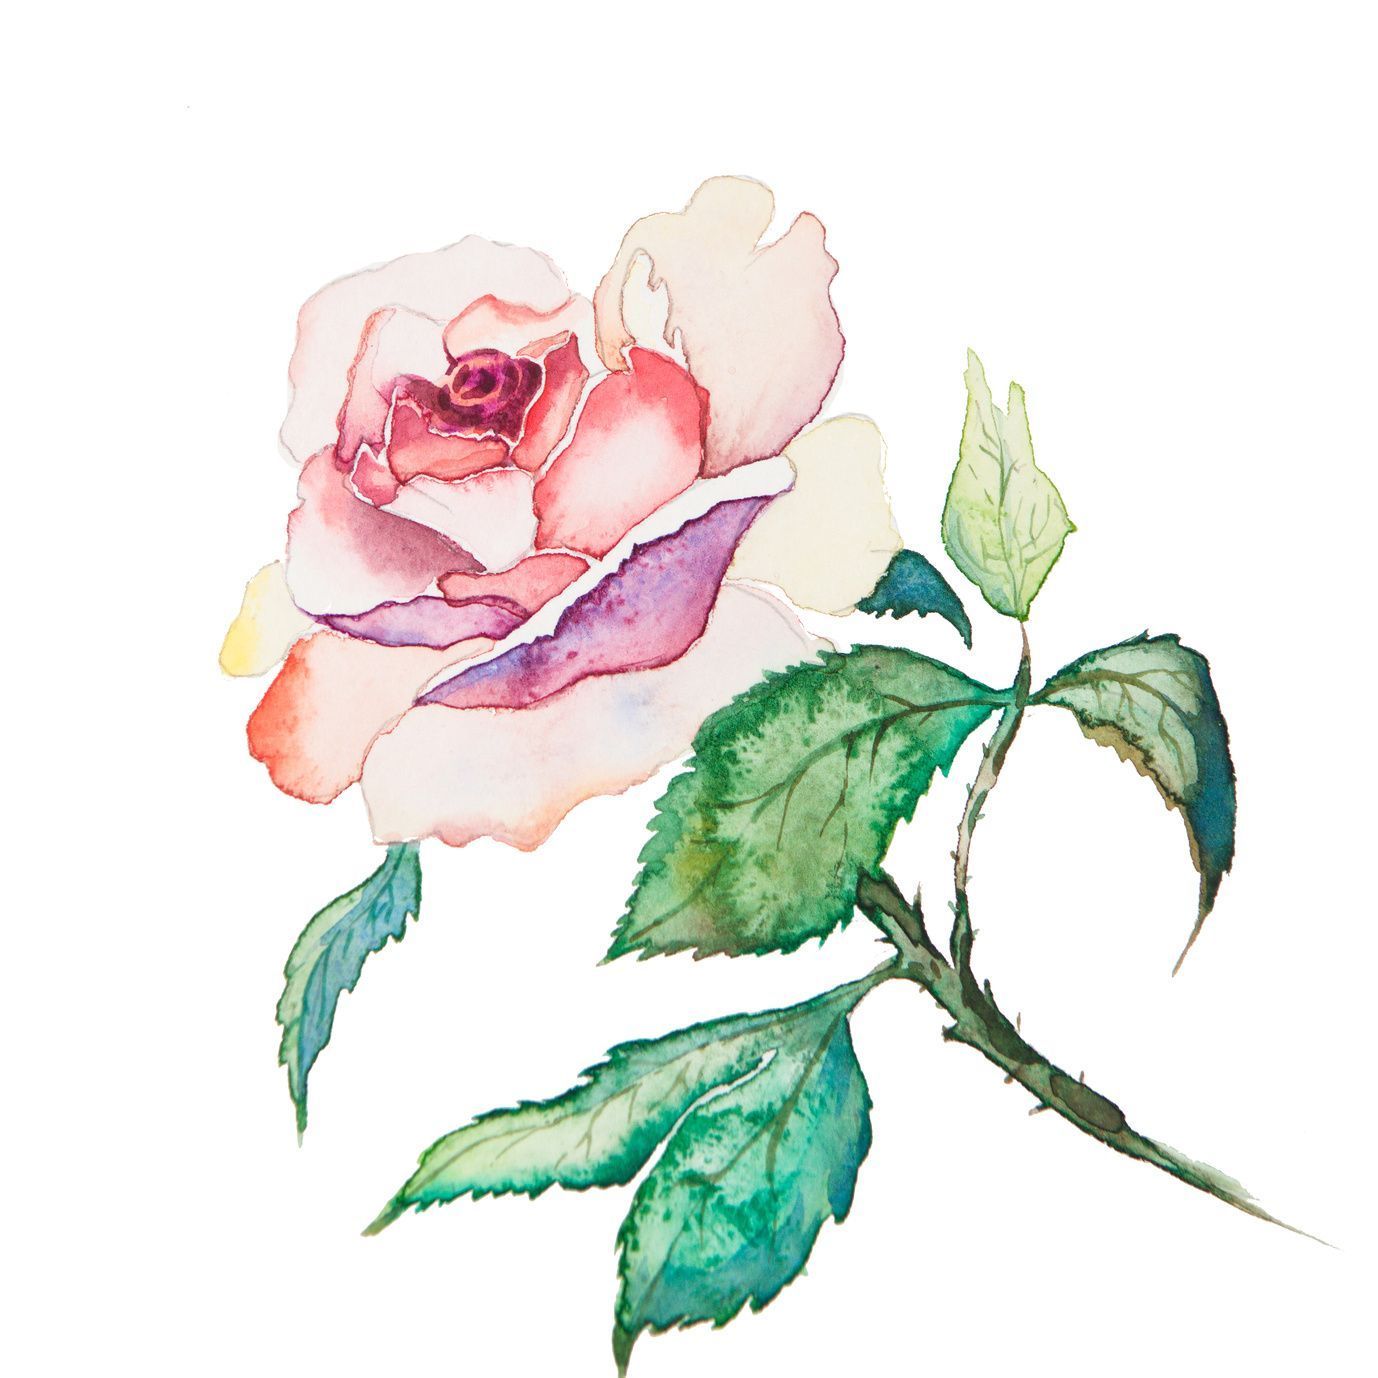 Möchten Sie Rosen zeichnen, gehören natürlich nicht nur Stiel, Blätter und Stacheln dazu, sondern auch schöne Blüten. Wer will, bringt noch etwas Farbe ins Spiel.